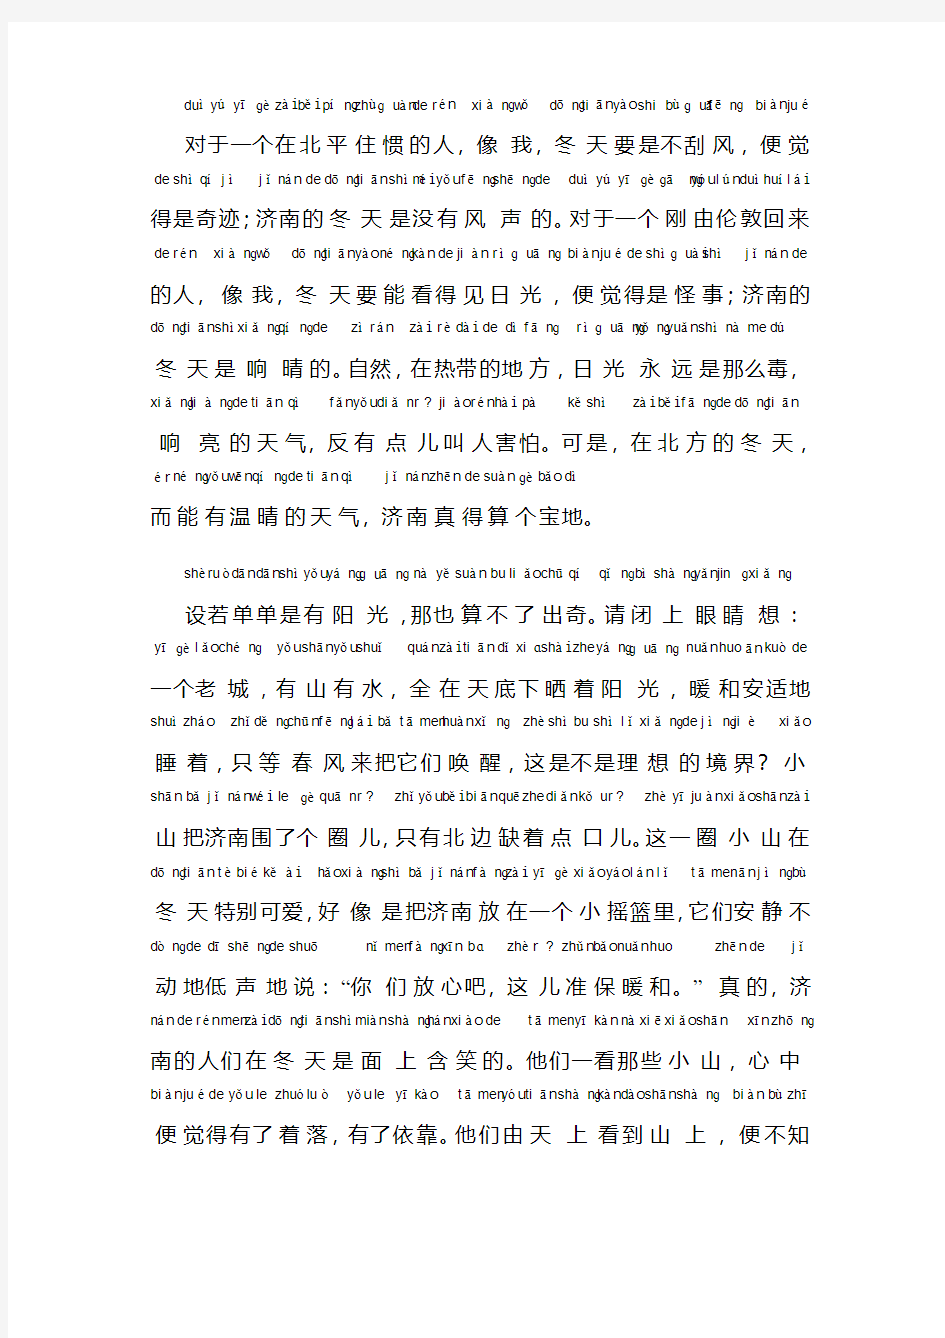 普通话考试资料17普通话朗读作品《济南的冬天》文字加拼音